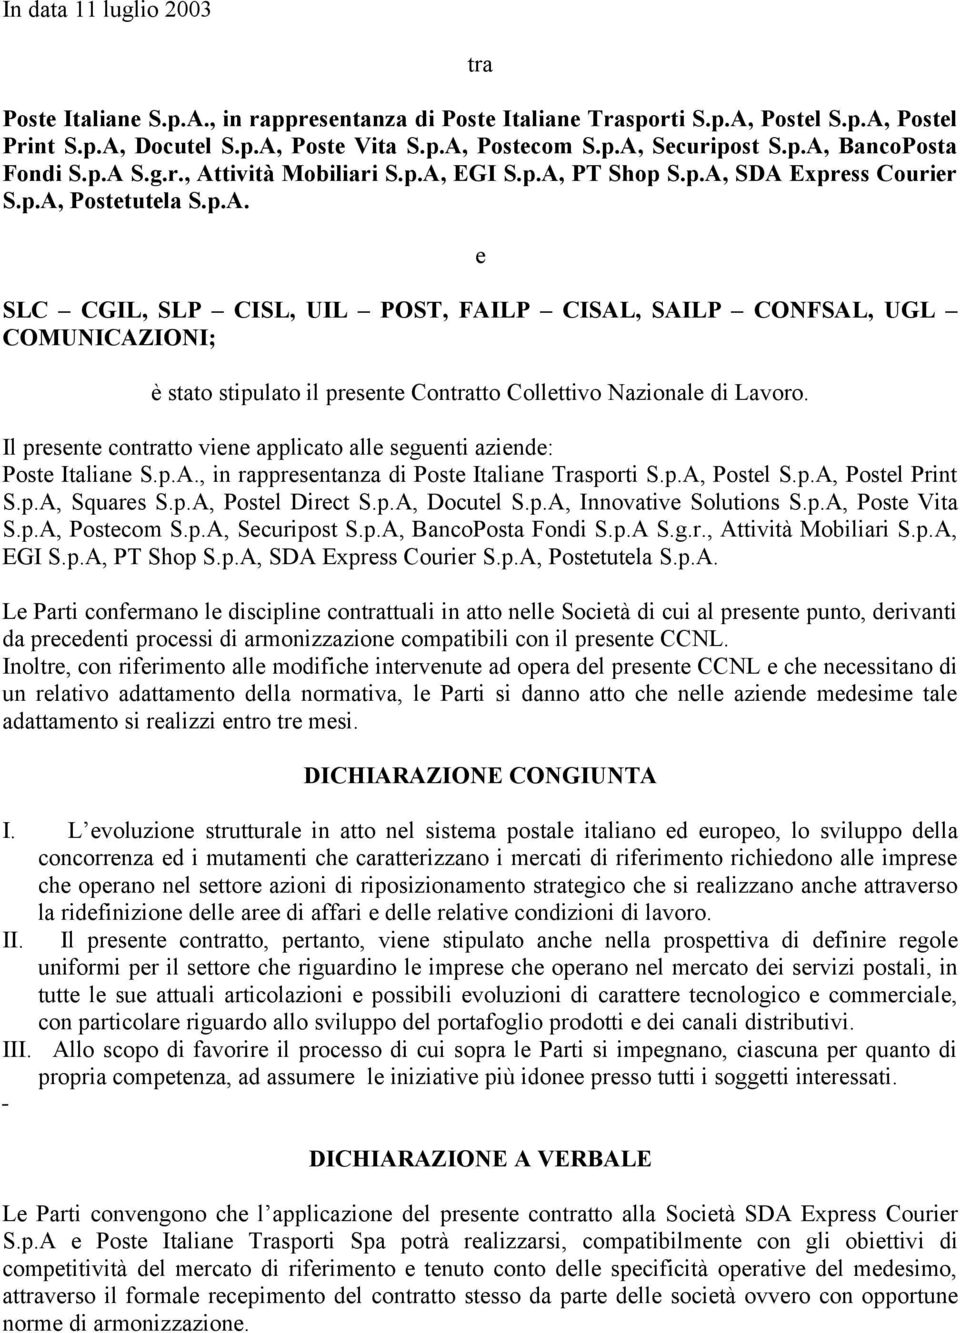 Il presente contratto viene applicato alle seguenti aziende: Poste Italiane S.p.A., in rappresentanza di Poste Italiane Trasporti S.p.A, Postel S.p.A, Postel Print S.p.A, Squares S.p.A, Postel Direct S.